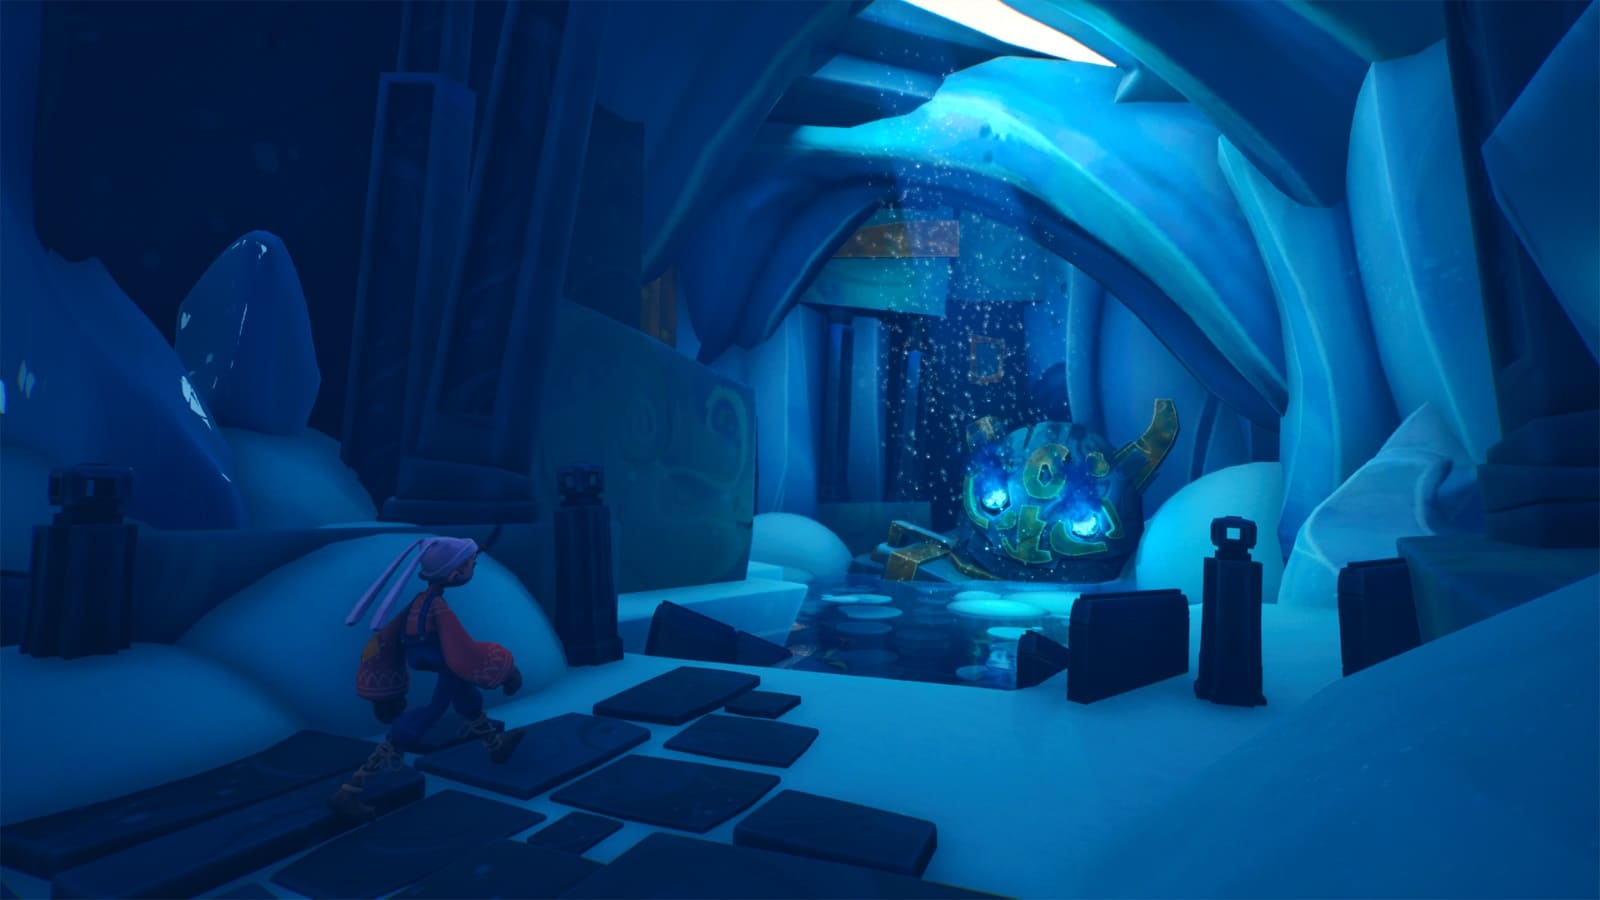 El protagonista está explorando dentro de una grieta luminosa que emite luz desde el techo.